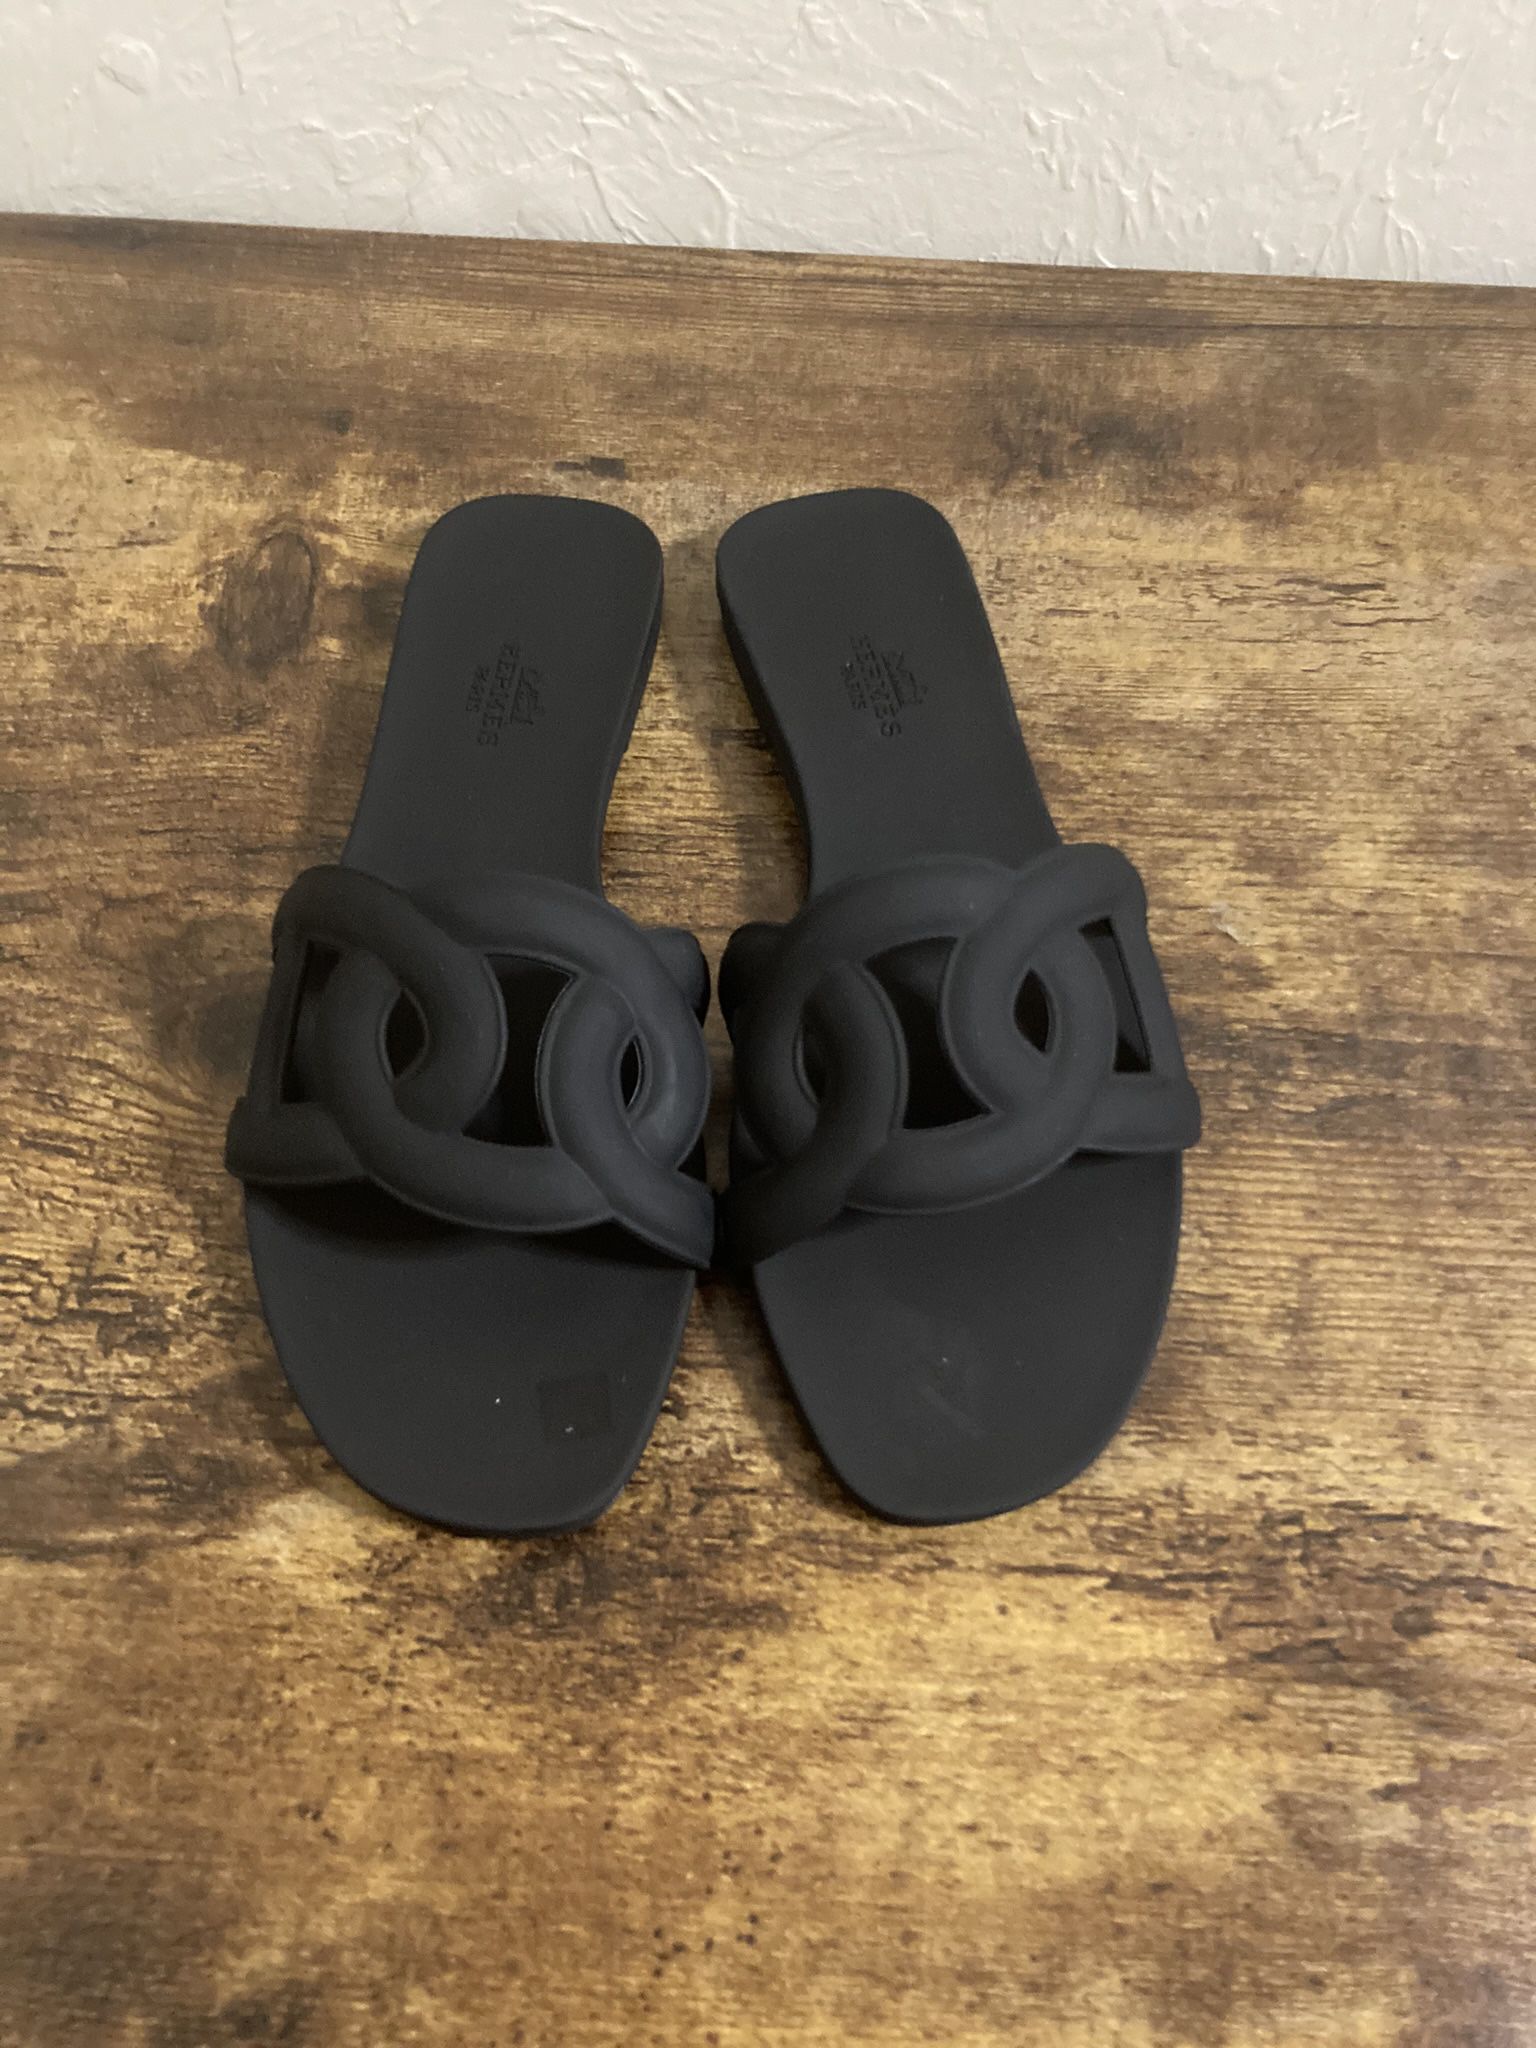 Hermes Aloha Sandals 37 Ladies Black Chaine D'ancre EU Size 37 US 7